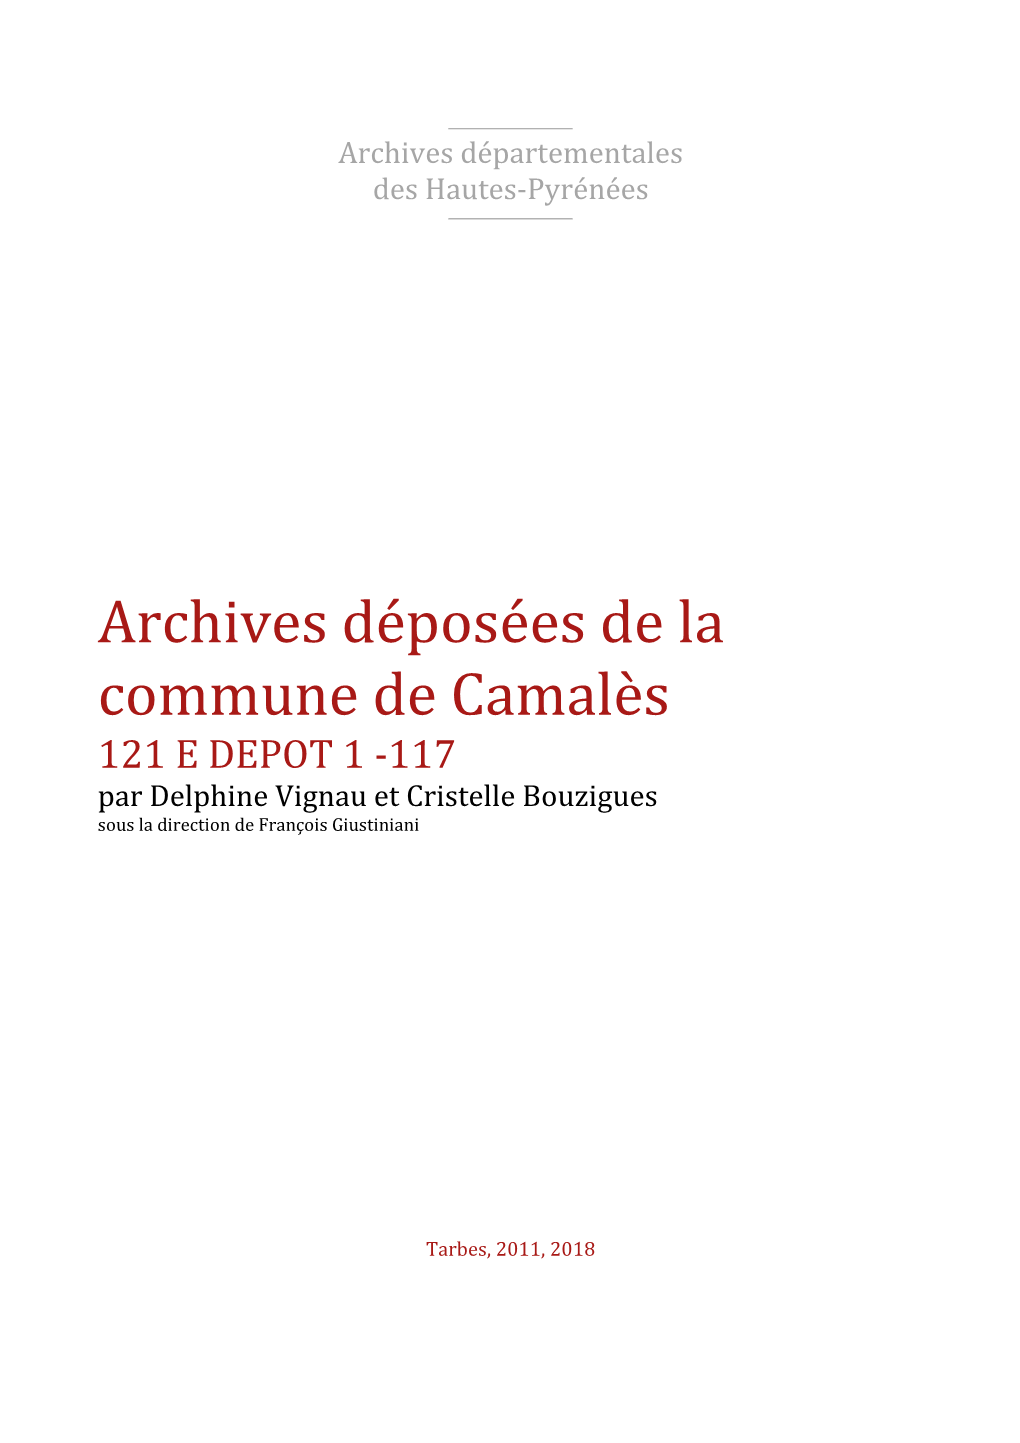 Répertoire Des Archives Déposées De Camalès